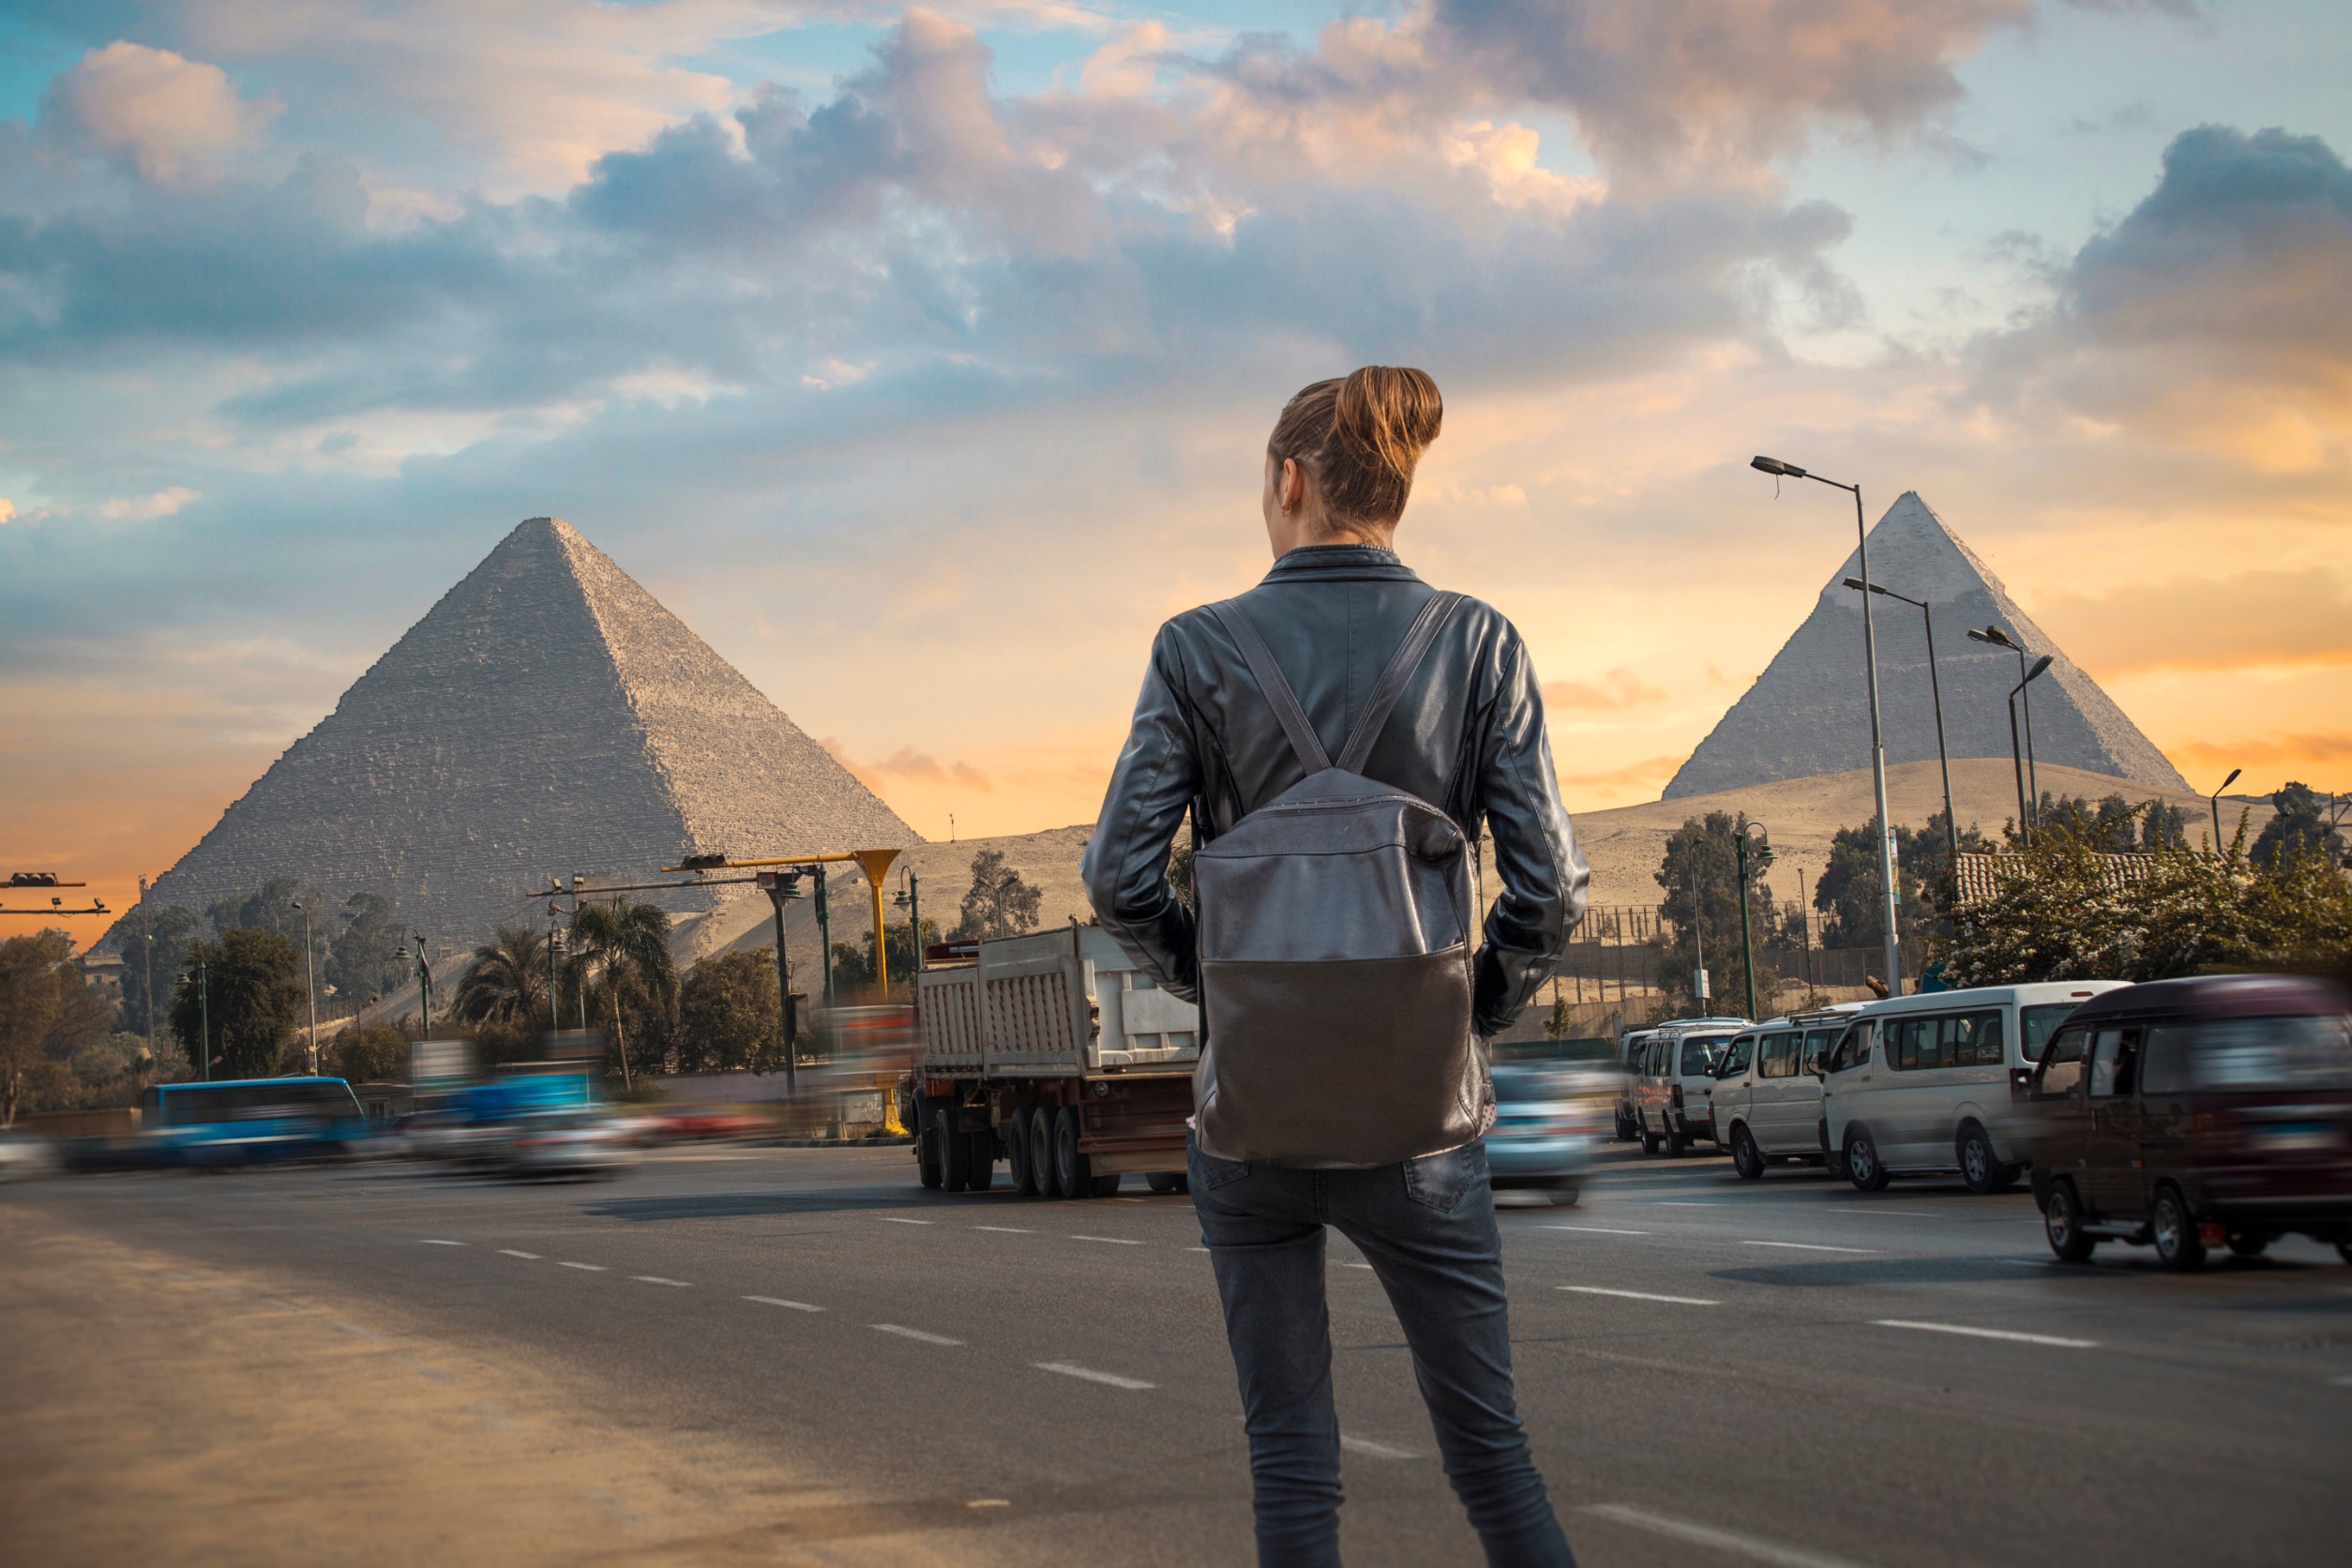 E-Visa Information for Australians Travelling to Egypt